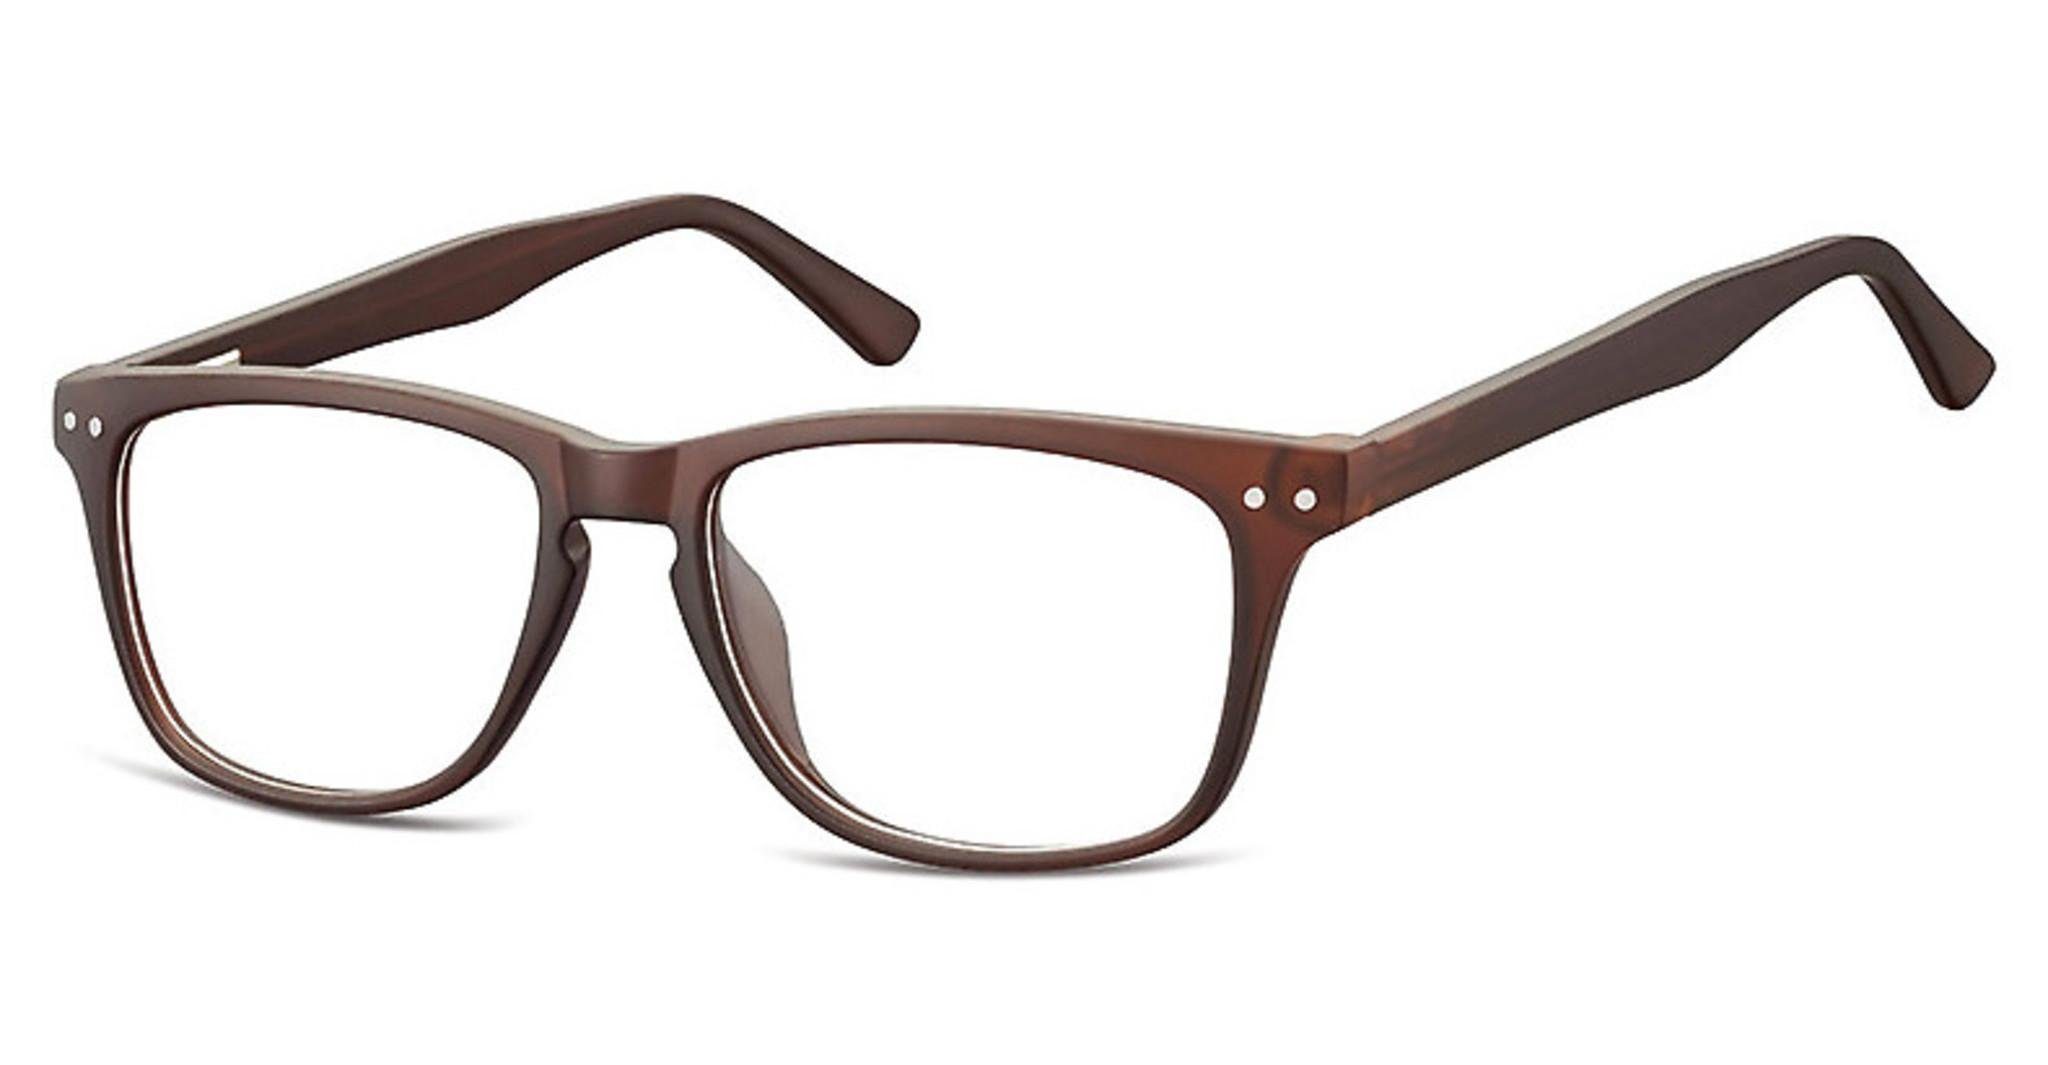 Neue Produkte diese Woche SUNOPTIC Brille CP136 braun